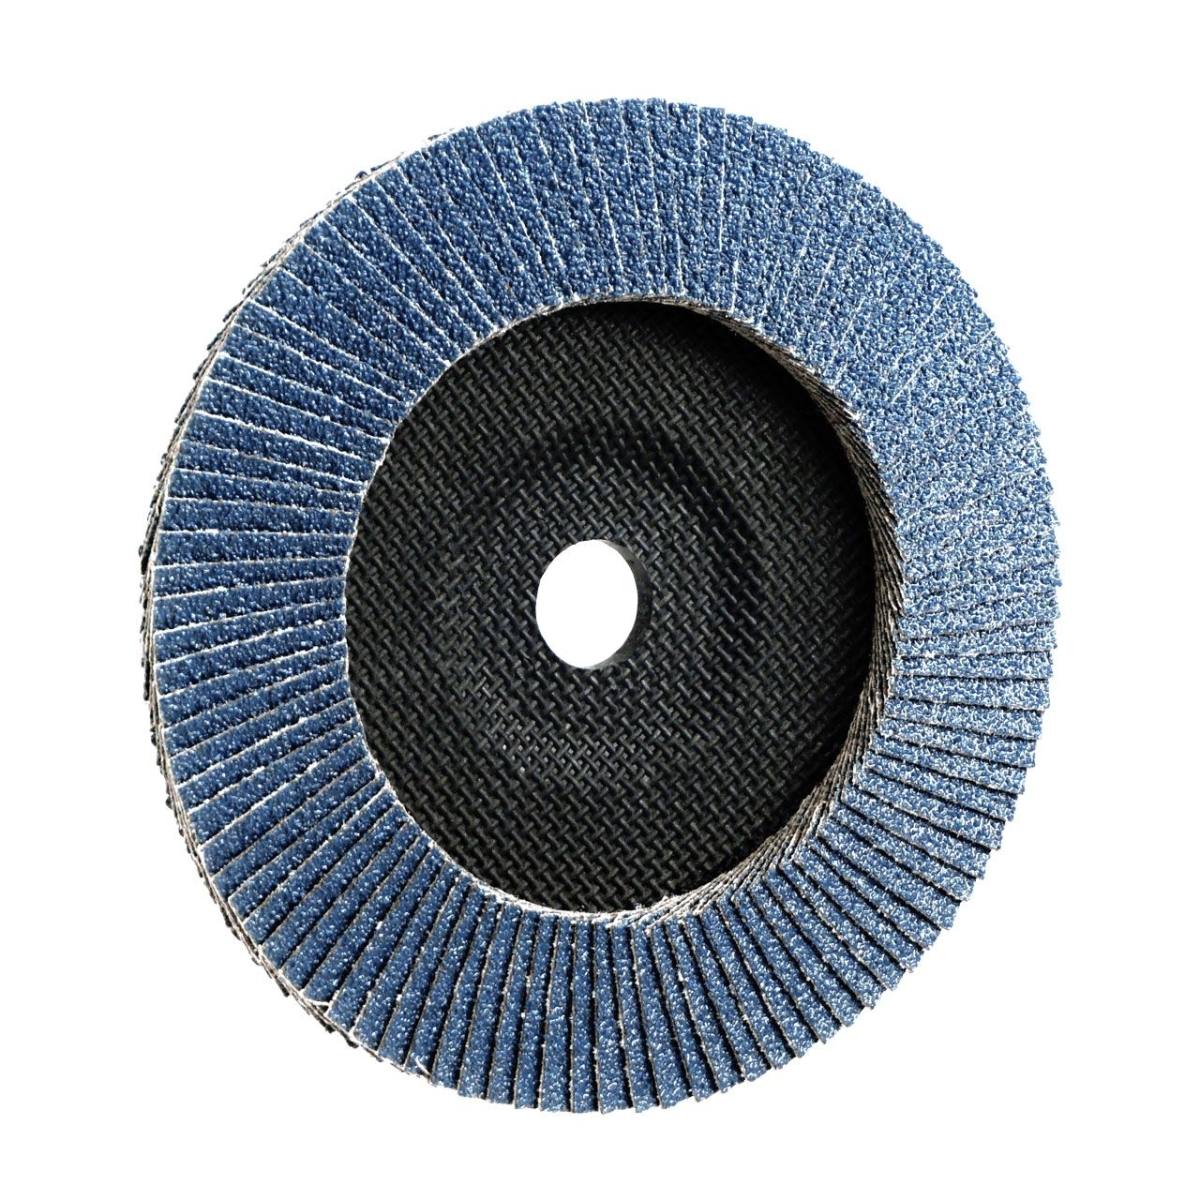 TRIMFIX ZIRCOPUR, 178 mm x 22.2 mm, grit 40, flap disc